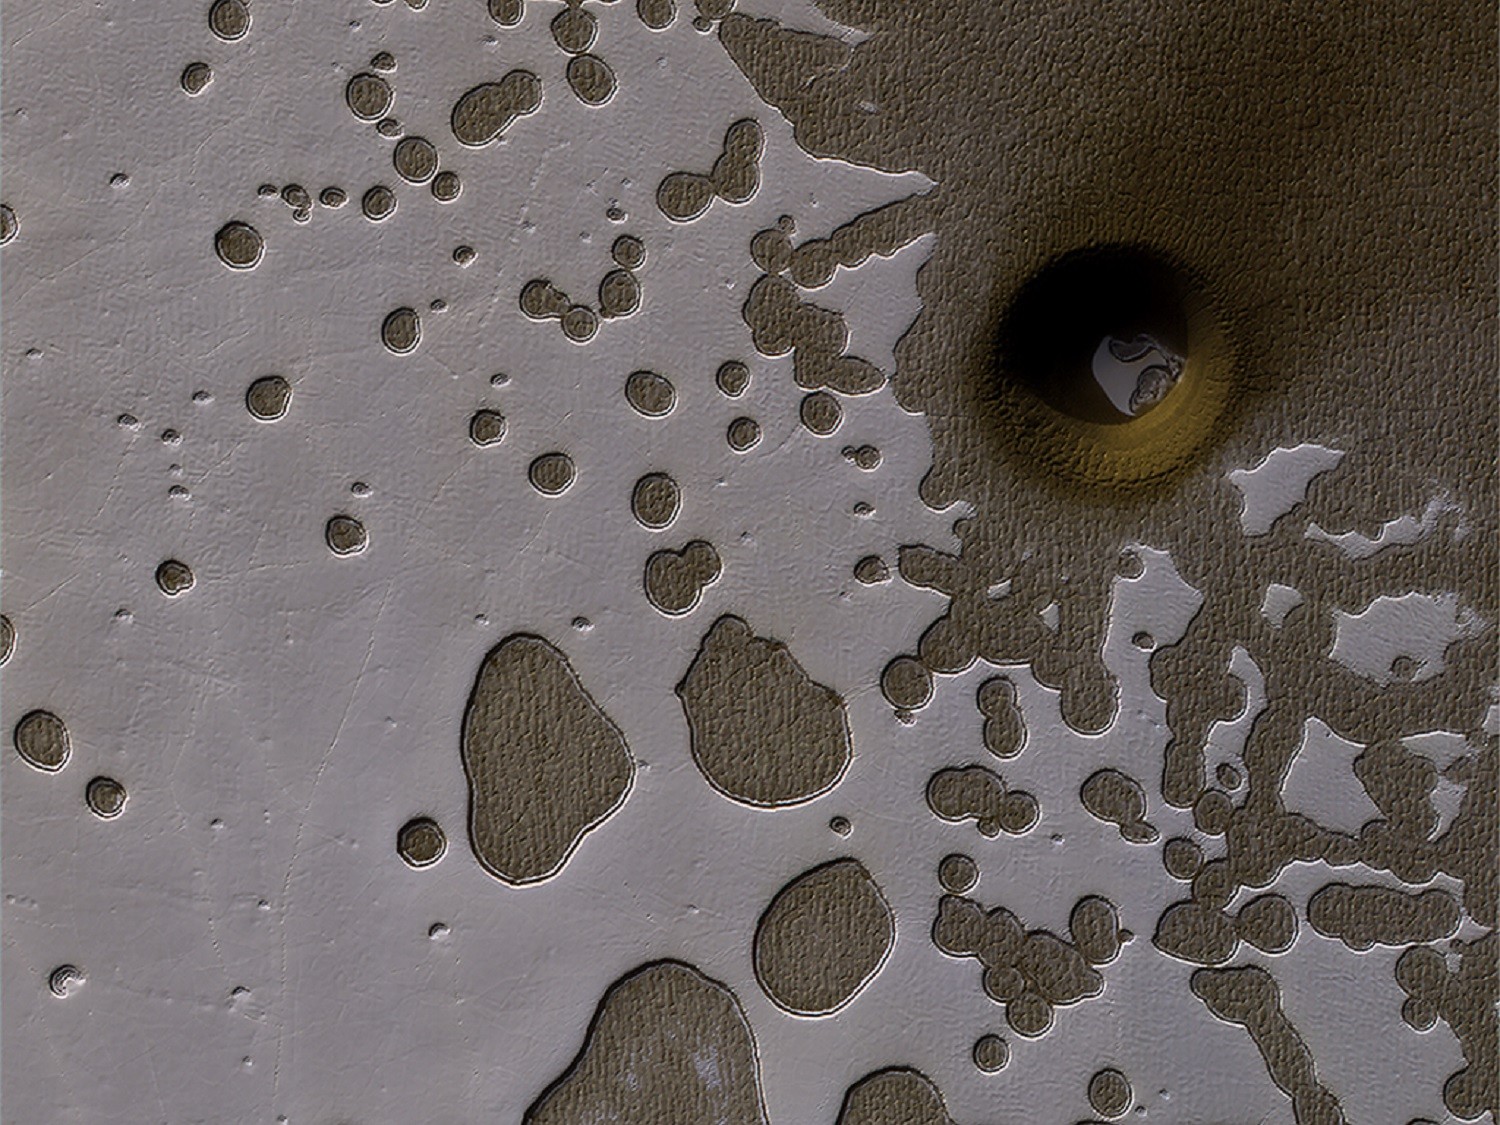 Mars dziurawy jak ser szwajcarski. Te struktury mówią nam wiele o Czerwonej Planecie